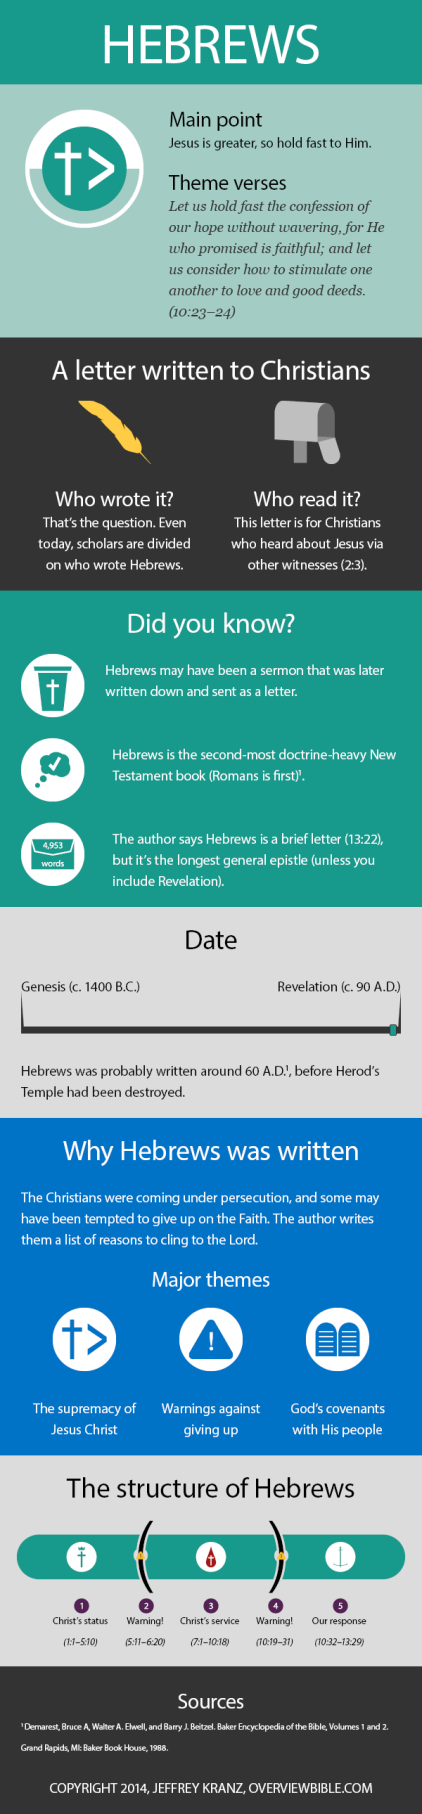 Hebrews infographic